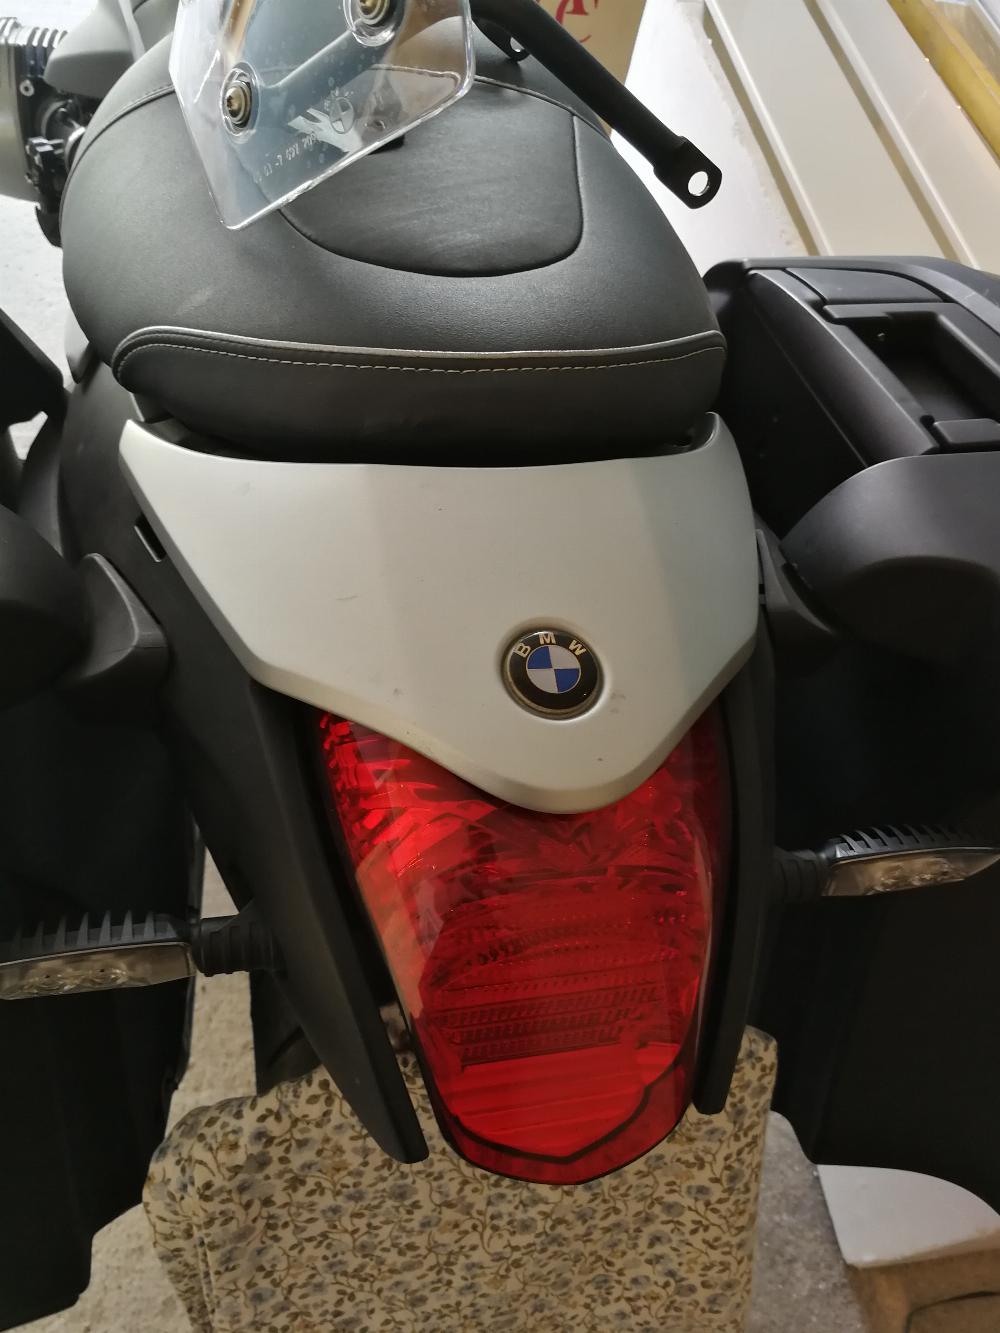 Motorrad verkaufen BMW R1200 R Ankauf